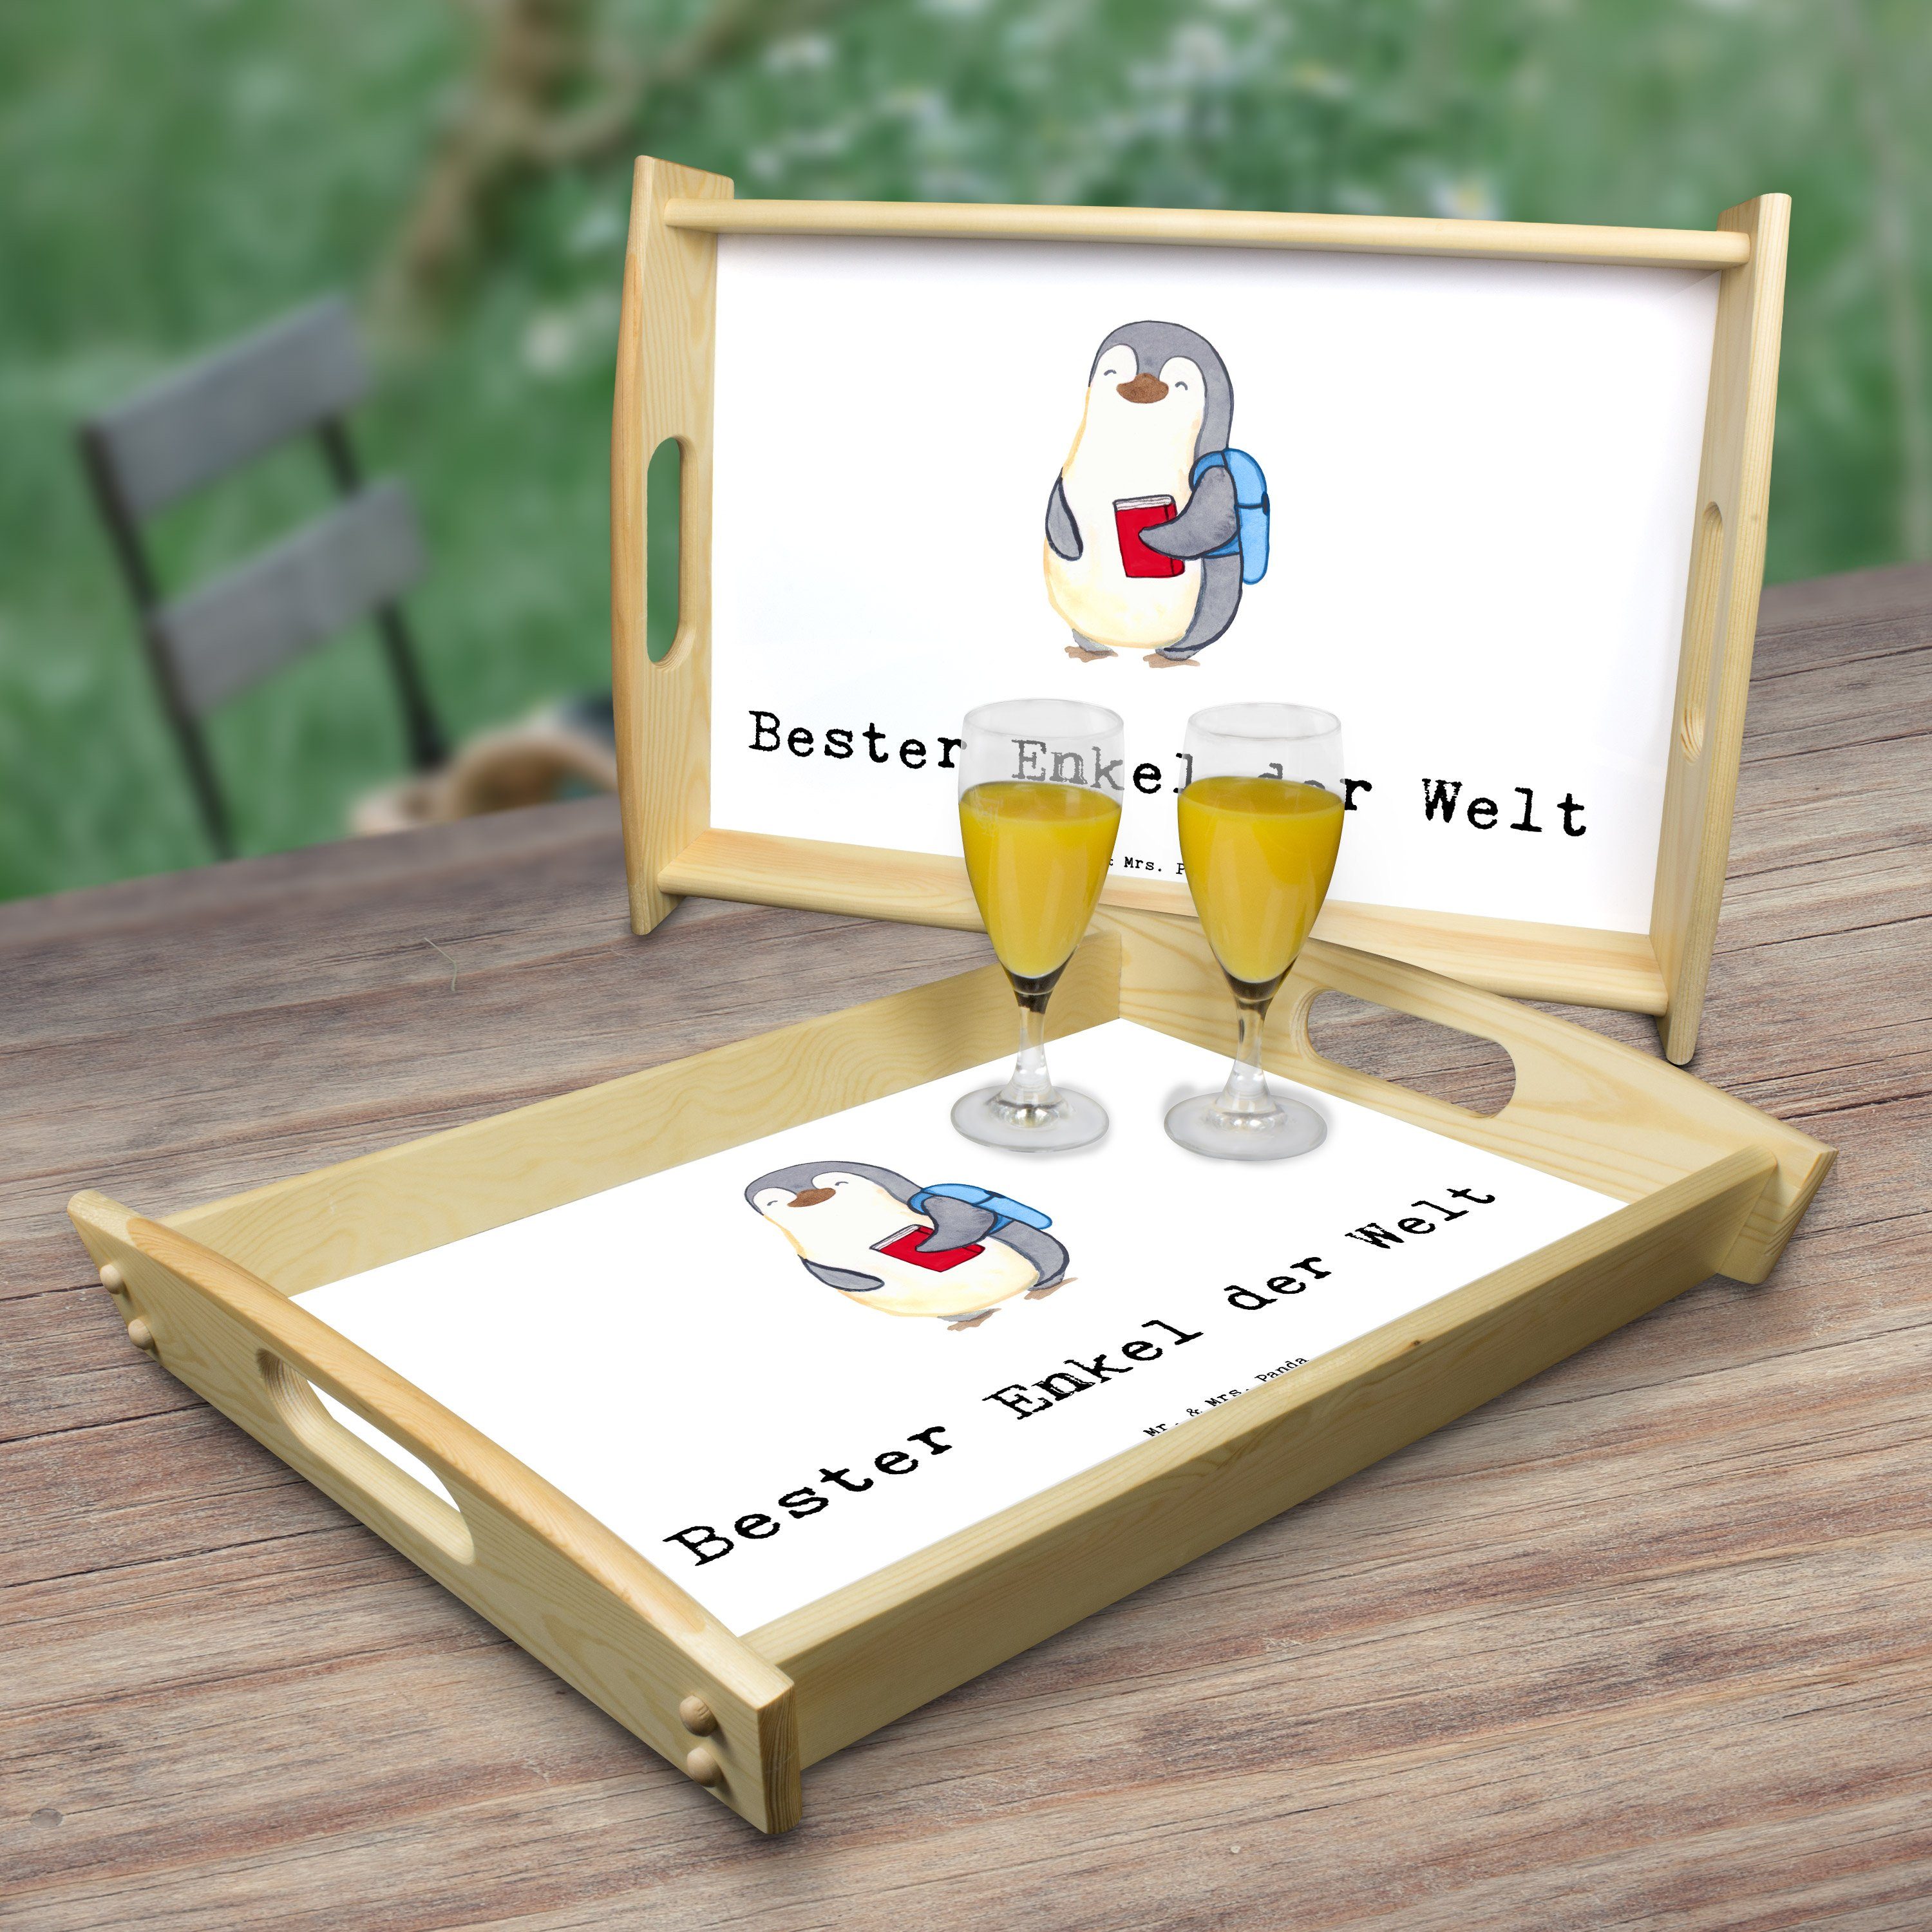 Mr. & Mrs. Pinguin Panda Weiß (1-tlg) K, Bester Welt - Frühstückstablett, der Echtholz Tablett Geschenk, Enkel - lasiert